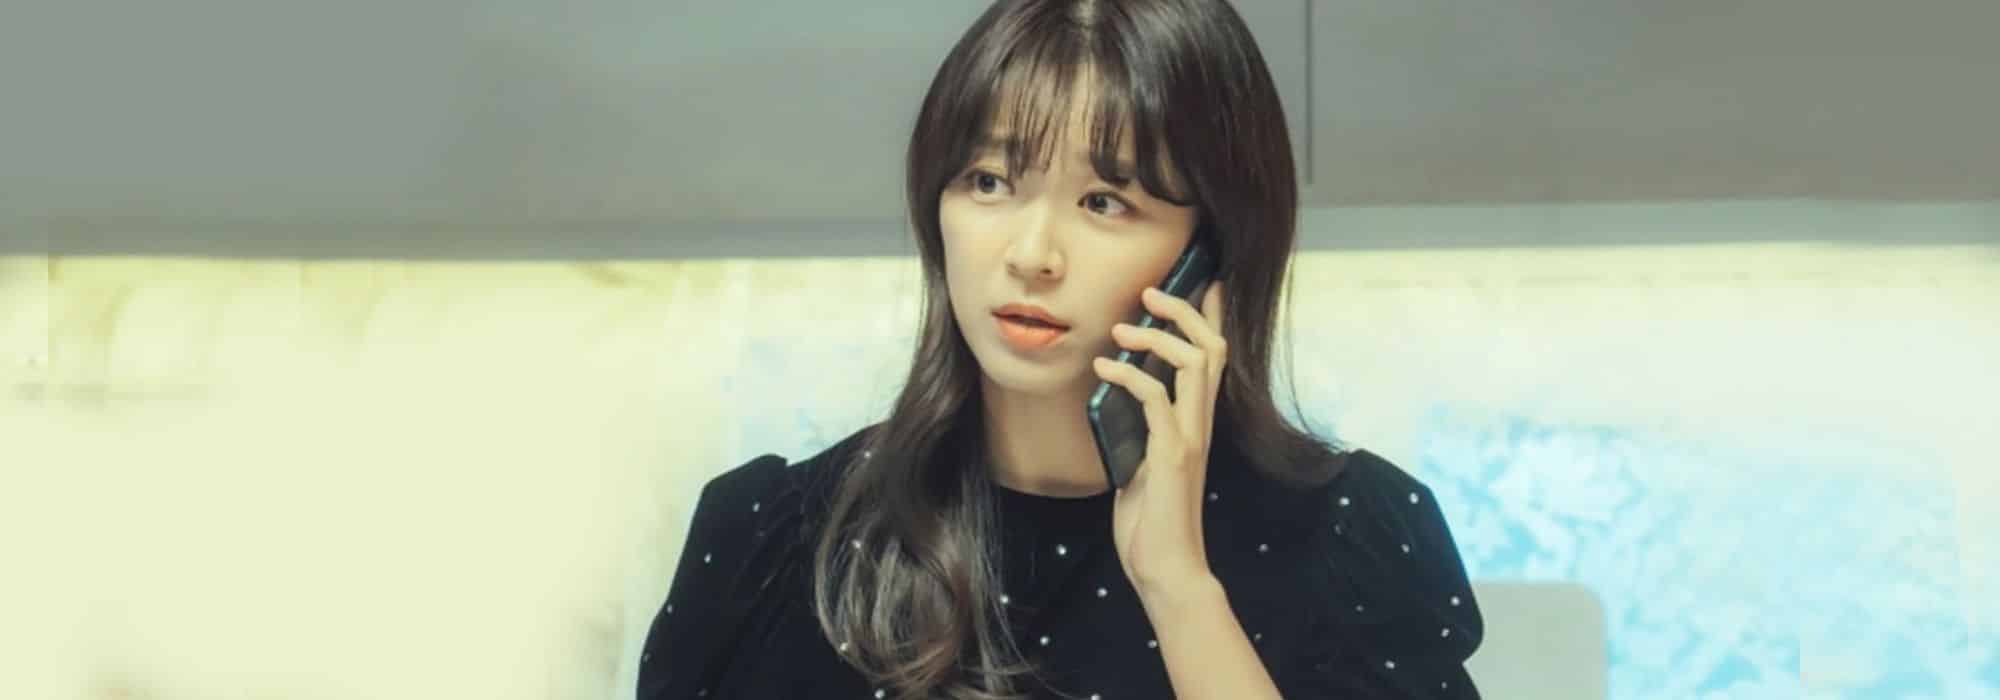 telefones de emergência em coreano